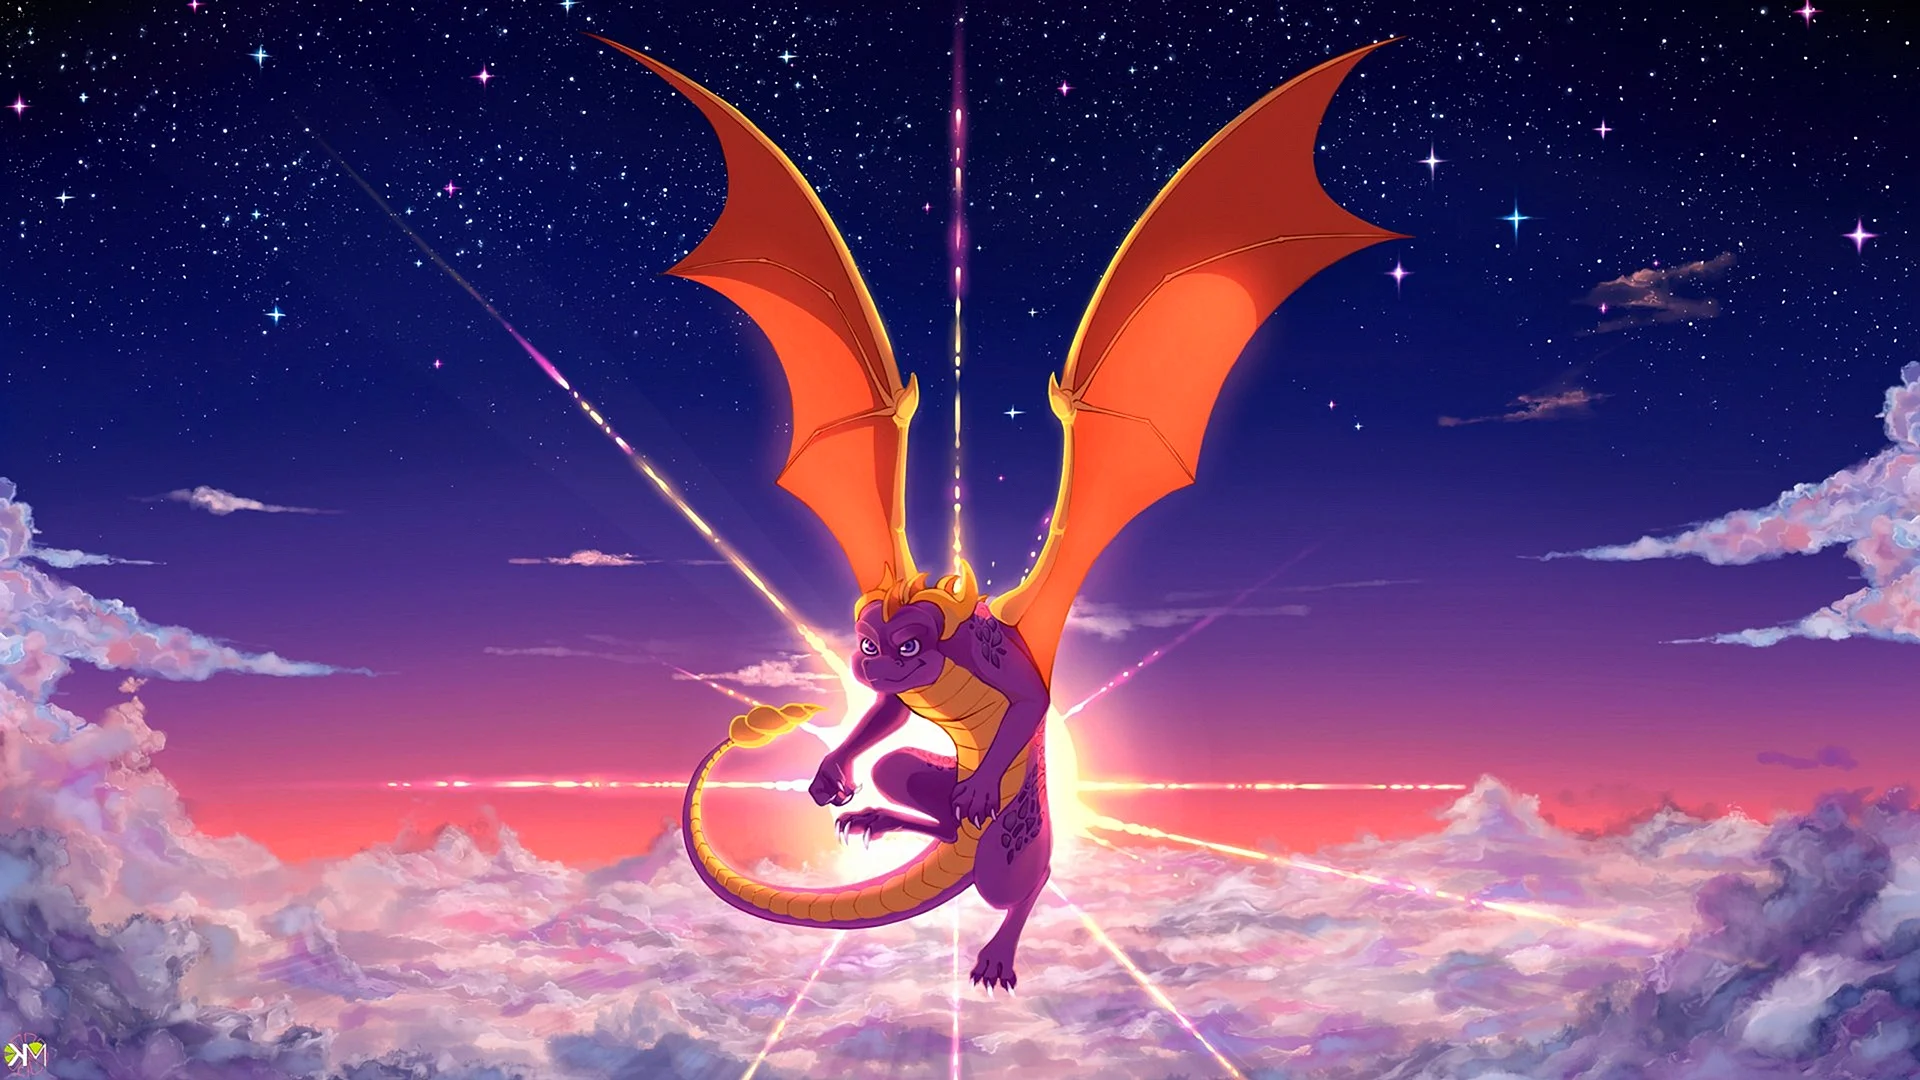 Spyro The Dragon 4 Wallpaper